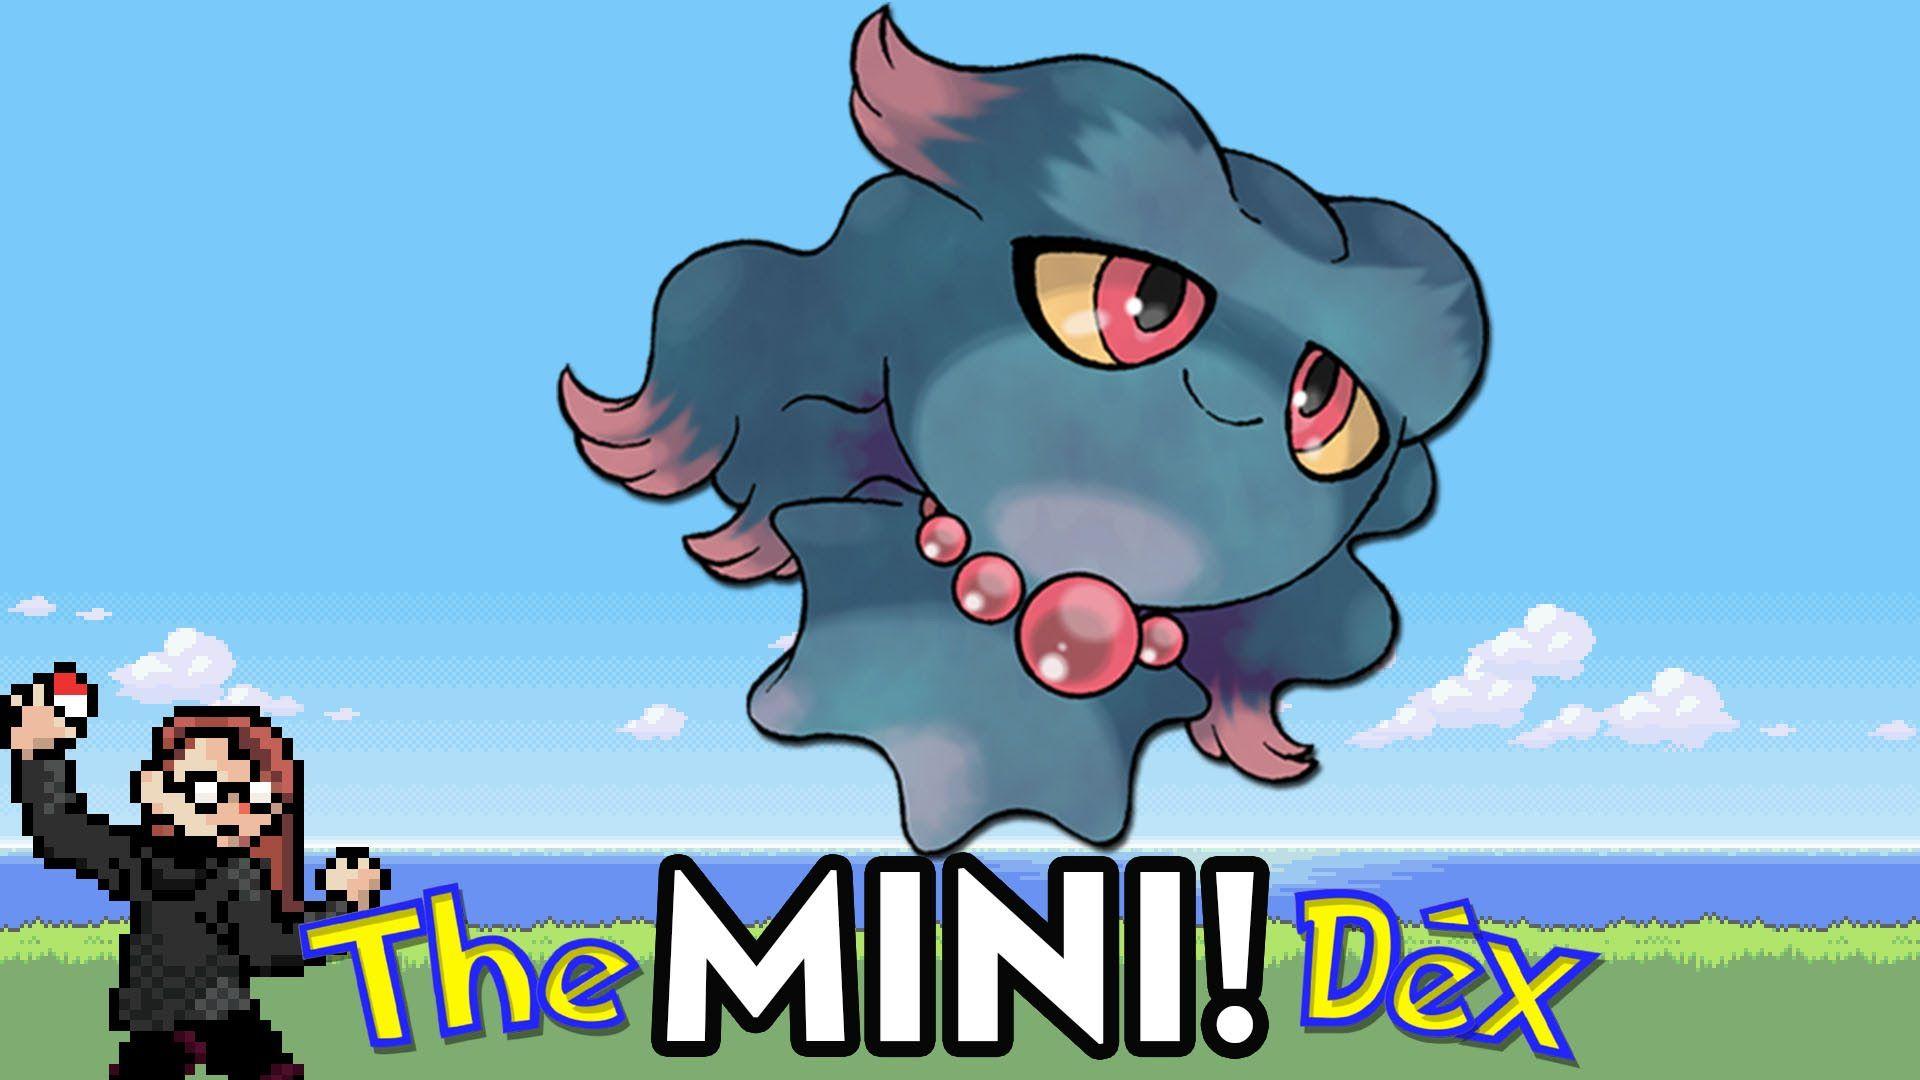 Misdreavus! The MiniDex !